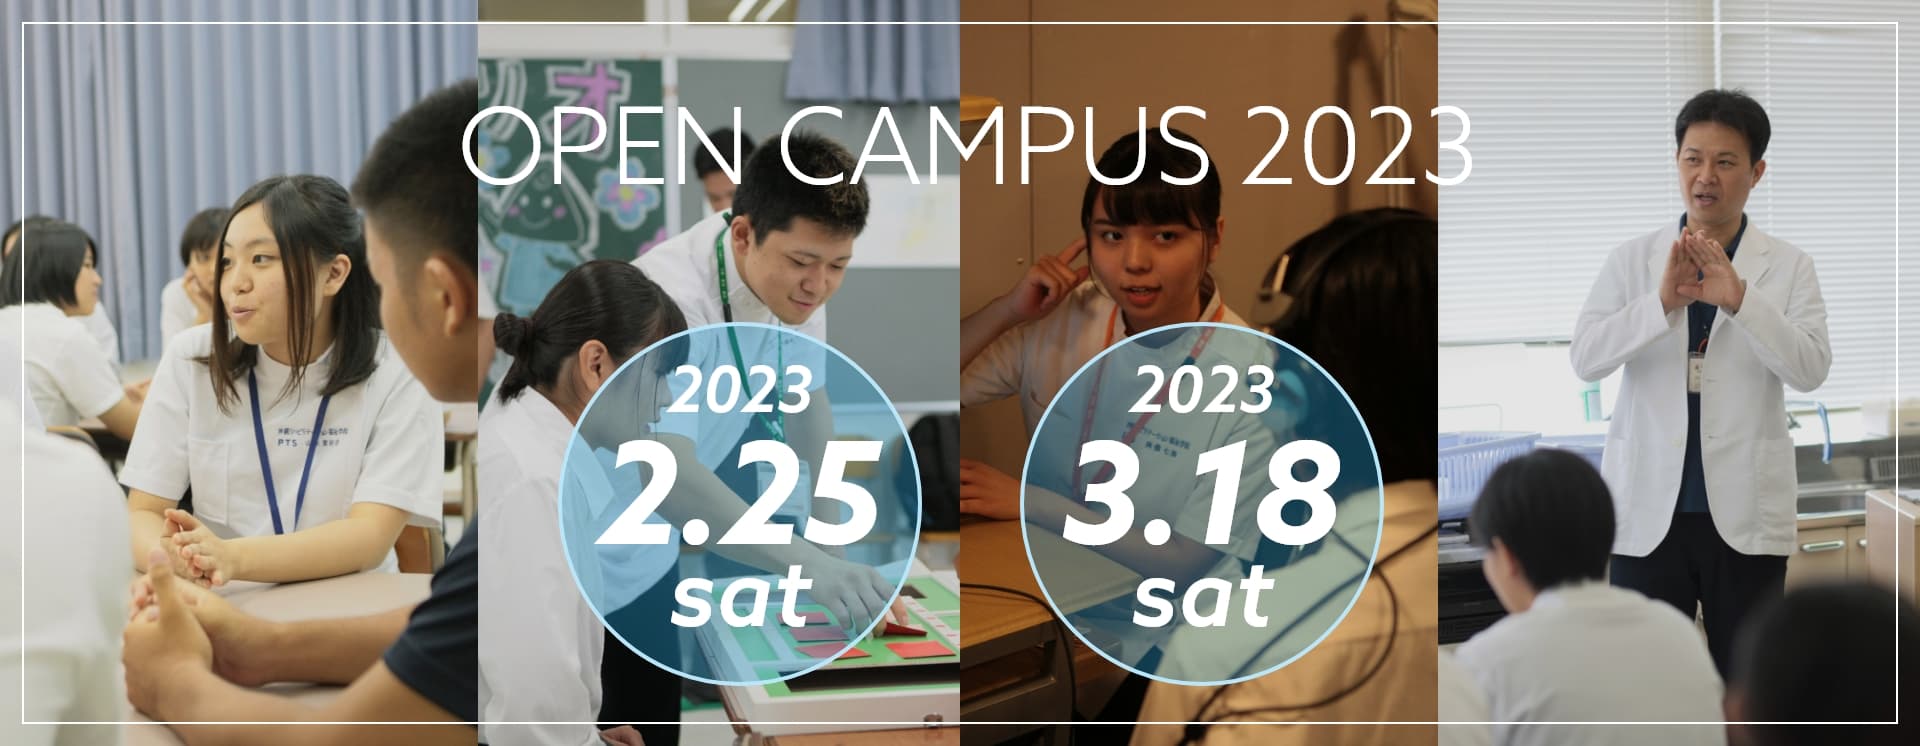 沖リハのオープンキャンパス2021-2022